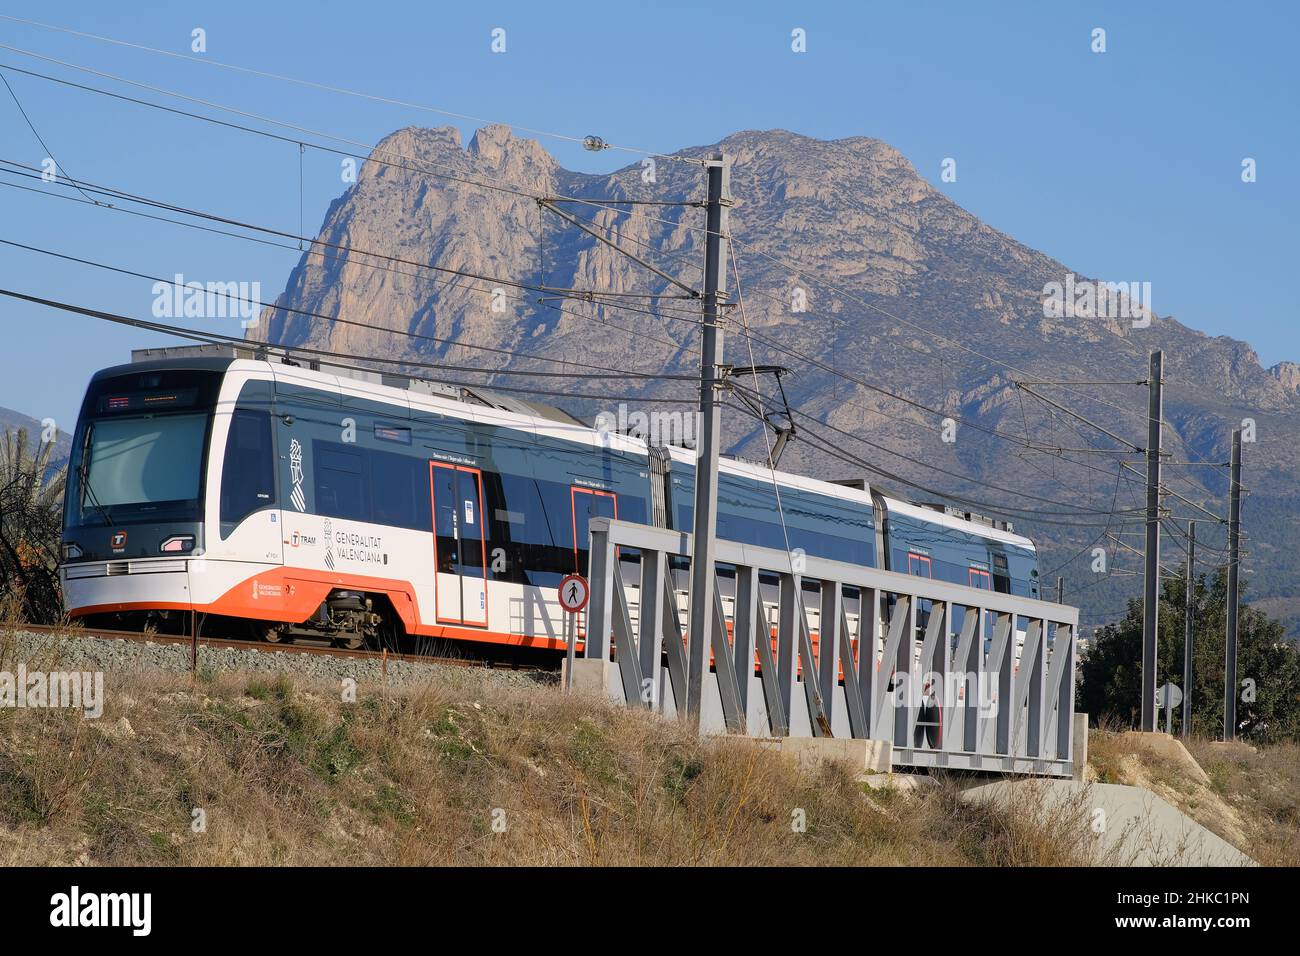 Villajoyosa Alicante Spagna 01.27.22 treno elettrico bianco e arancione con finestre colorate che attraversano il ponte in acciaio. Linee elettriche e piloni. Montagna Foto Stock